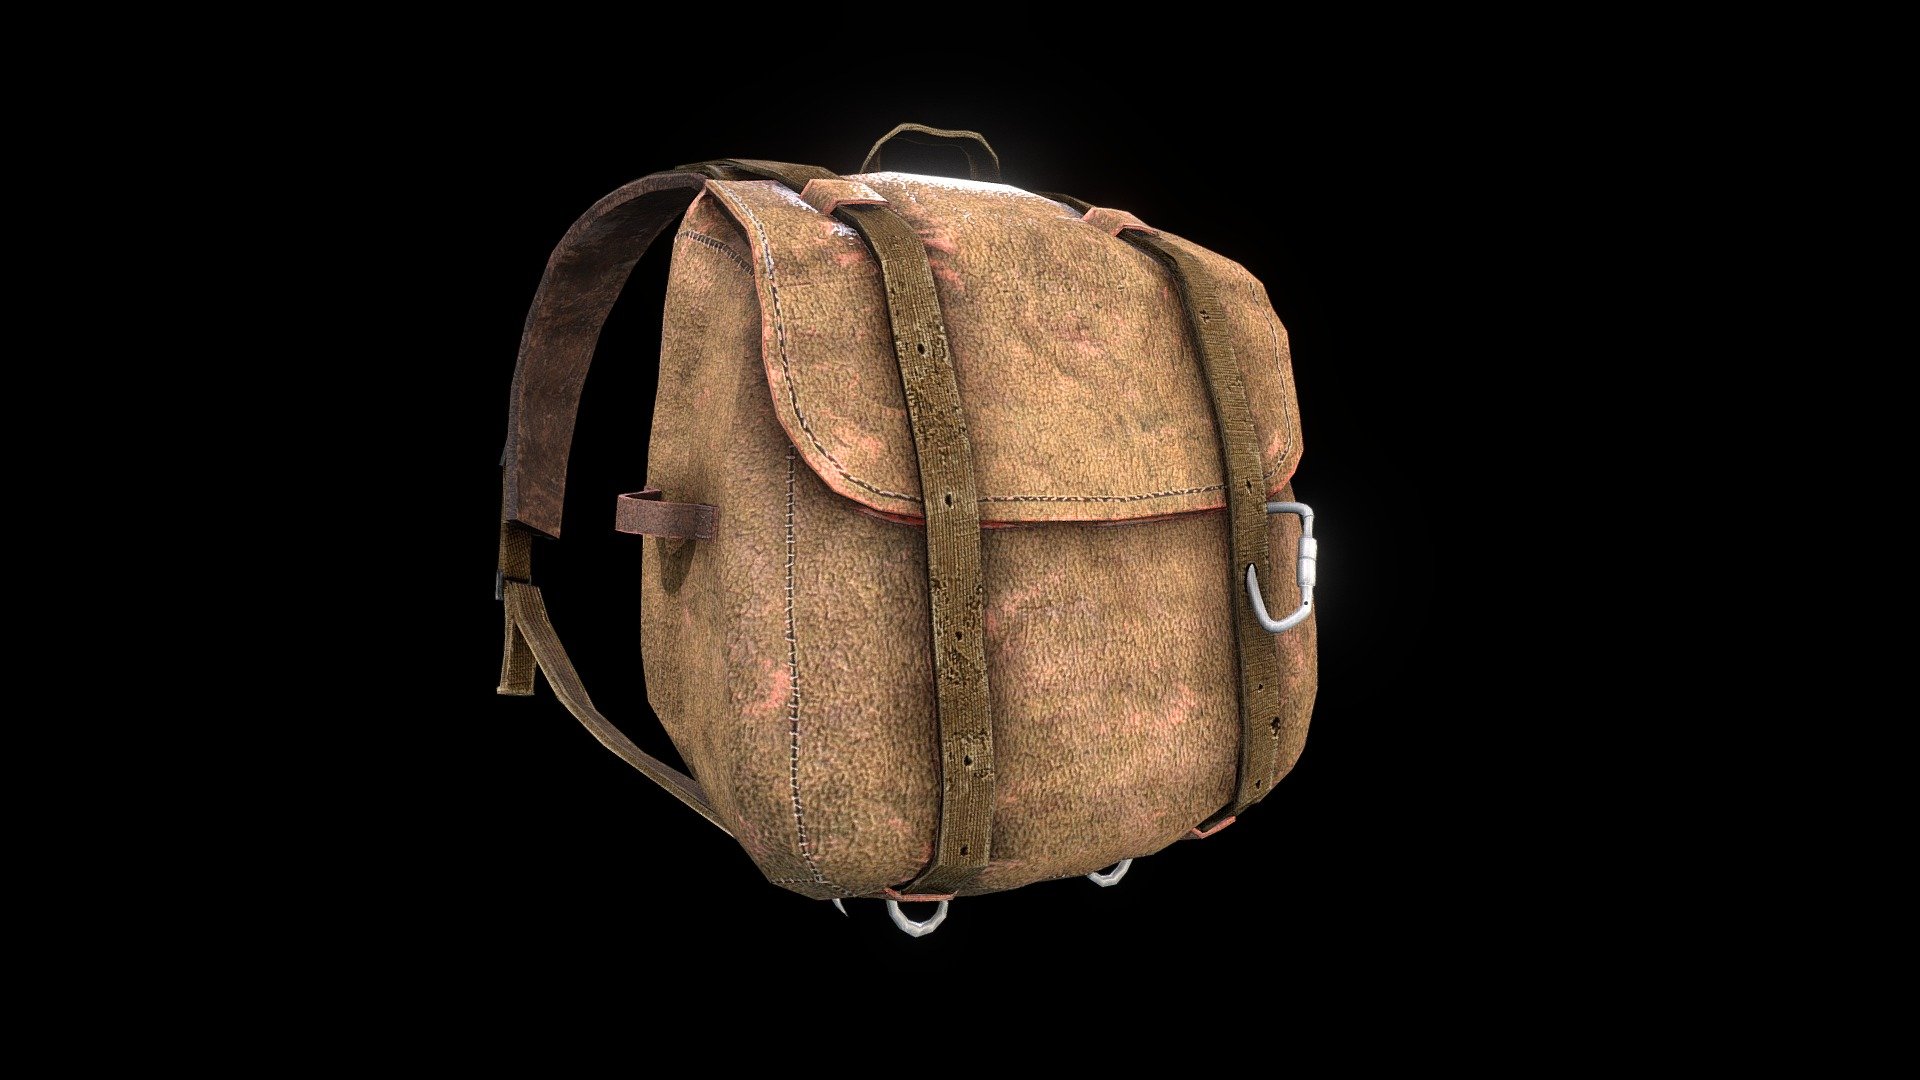 DayZ - Improvised Leather Bag